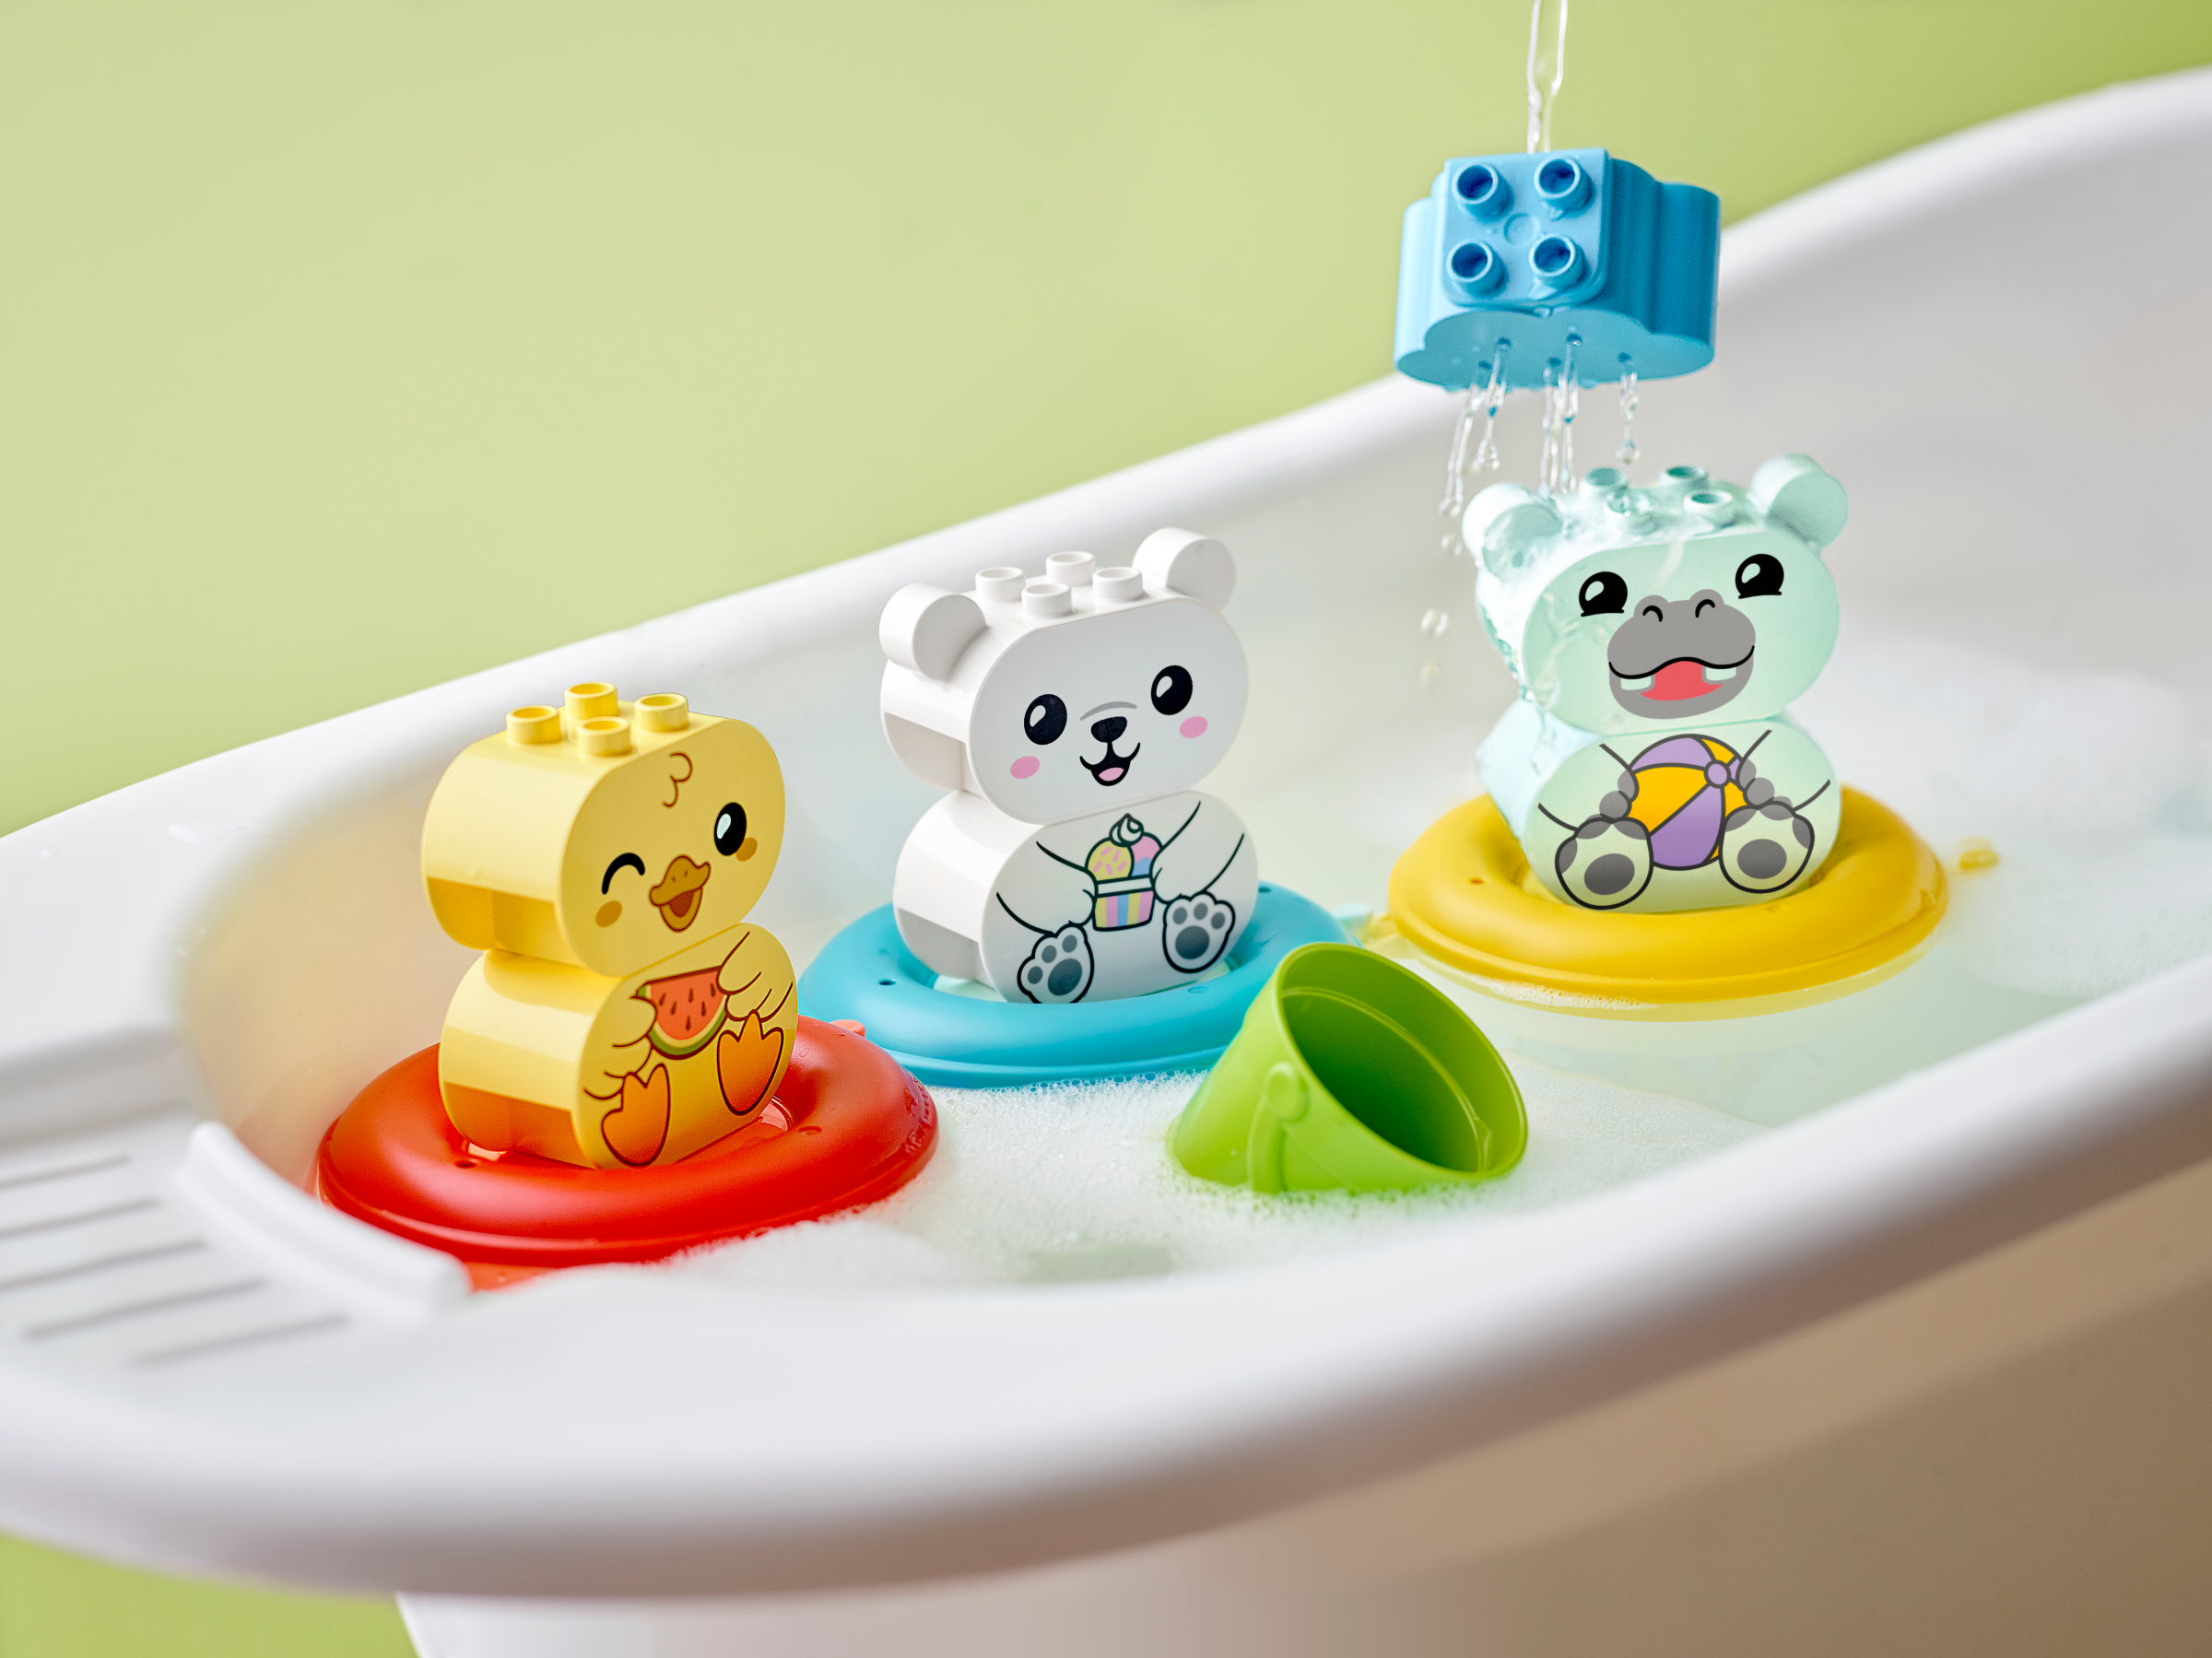 Lego 10965 Bath Time Fun Floating Animal Train